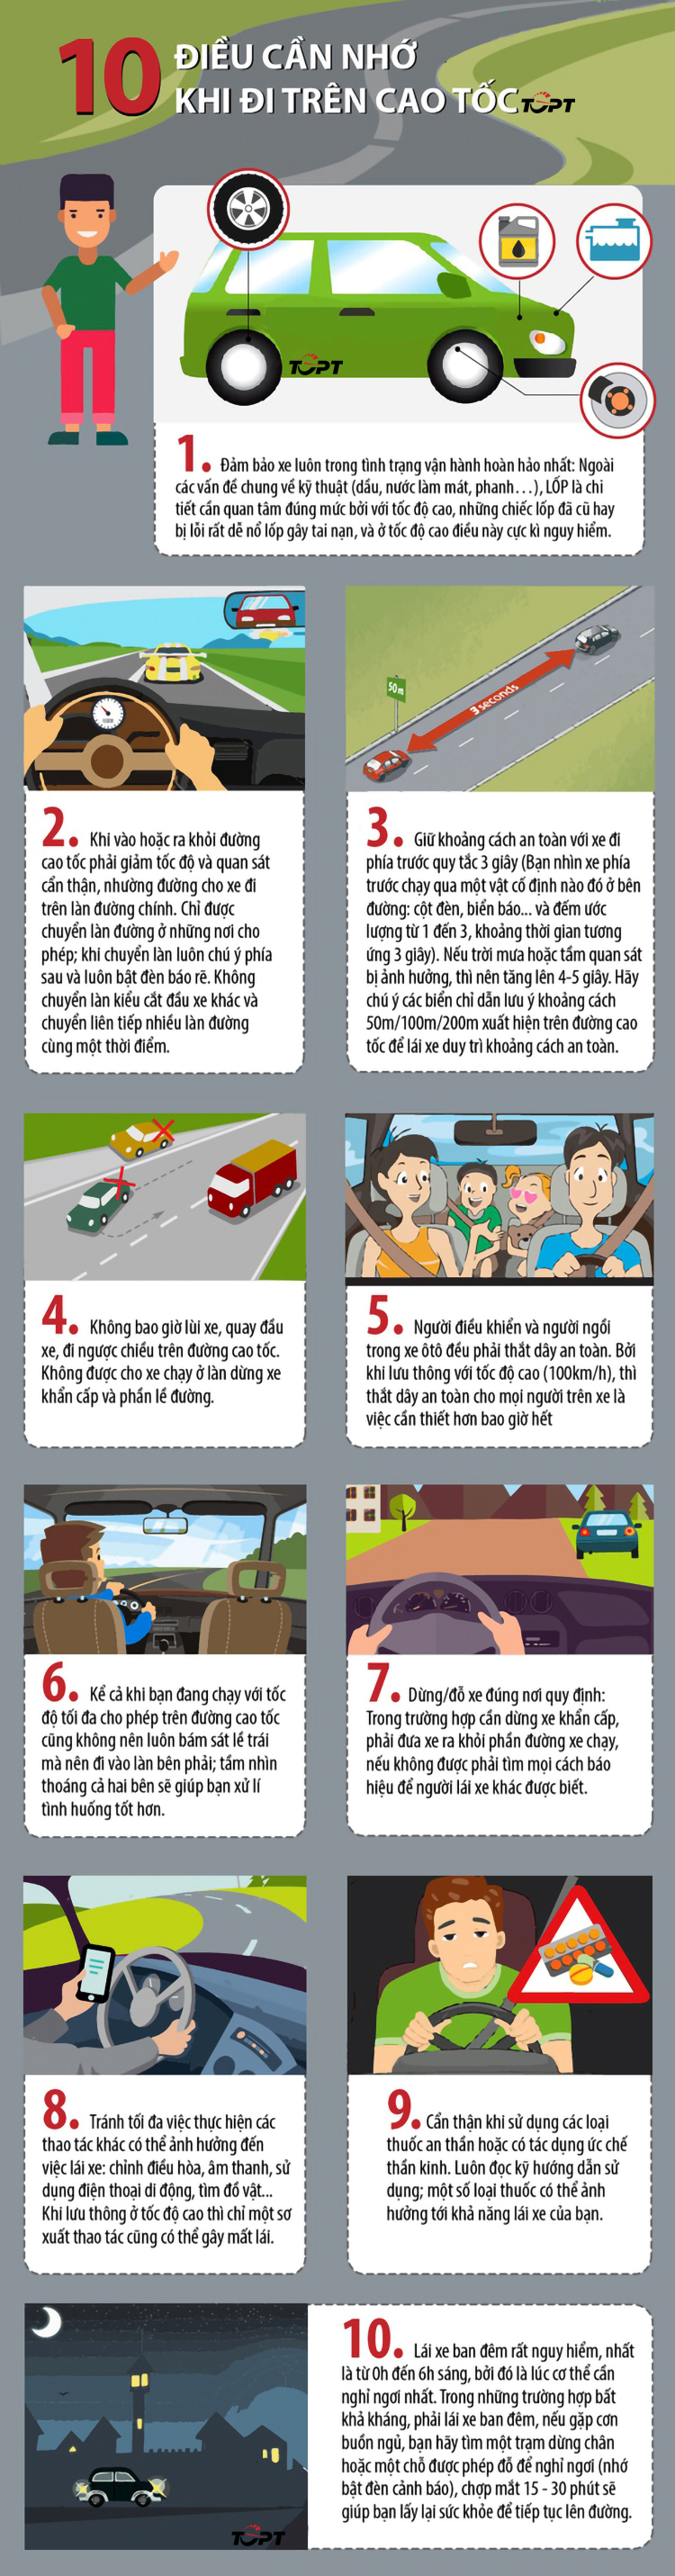 Kinh nghiệm lái xe: 10 điều cần nhớ để lái xe an toàn trên cao tốc - Ảnh 1.